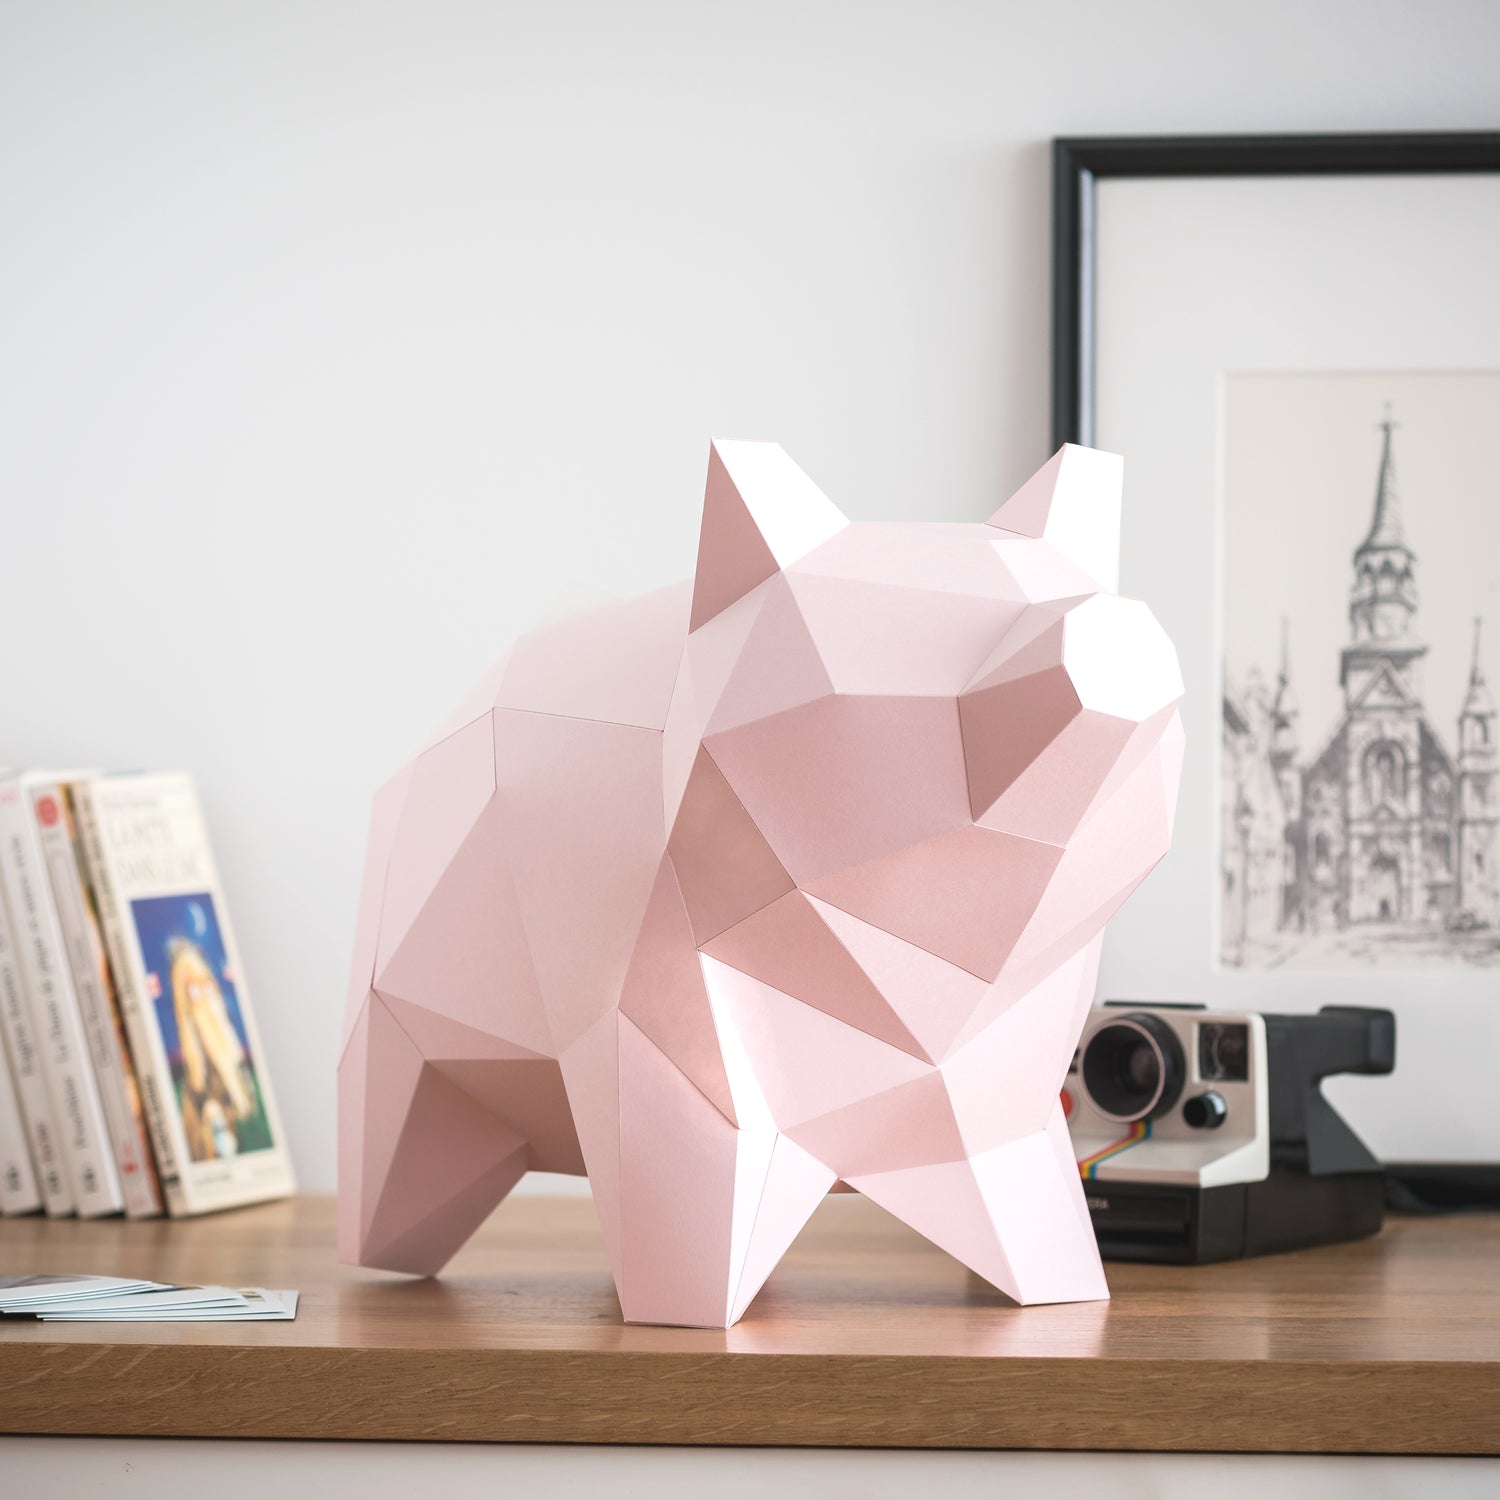 DIY PAPER SCULPTURE - PIG